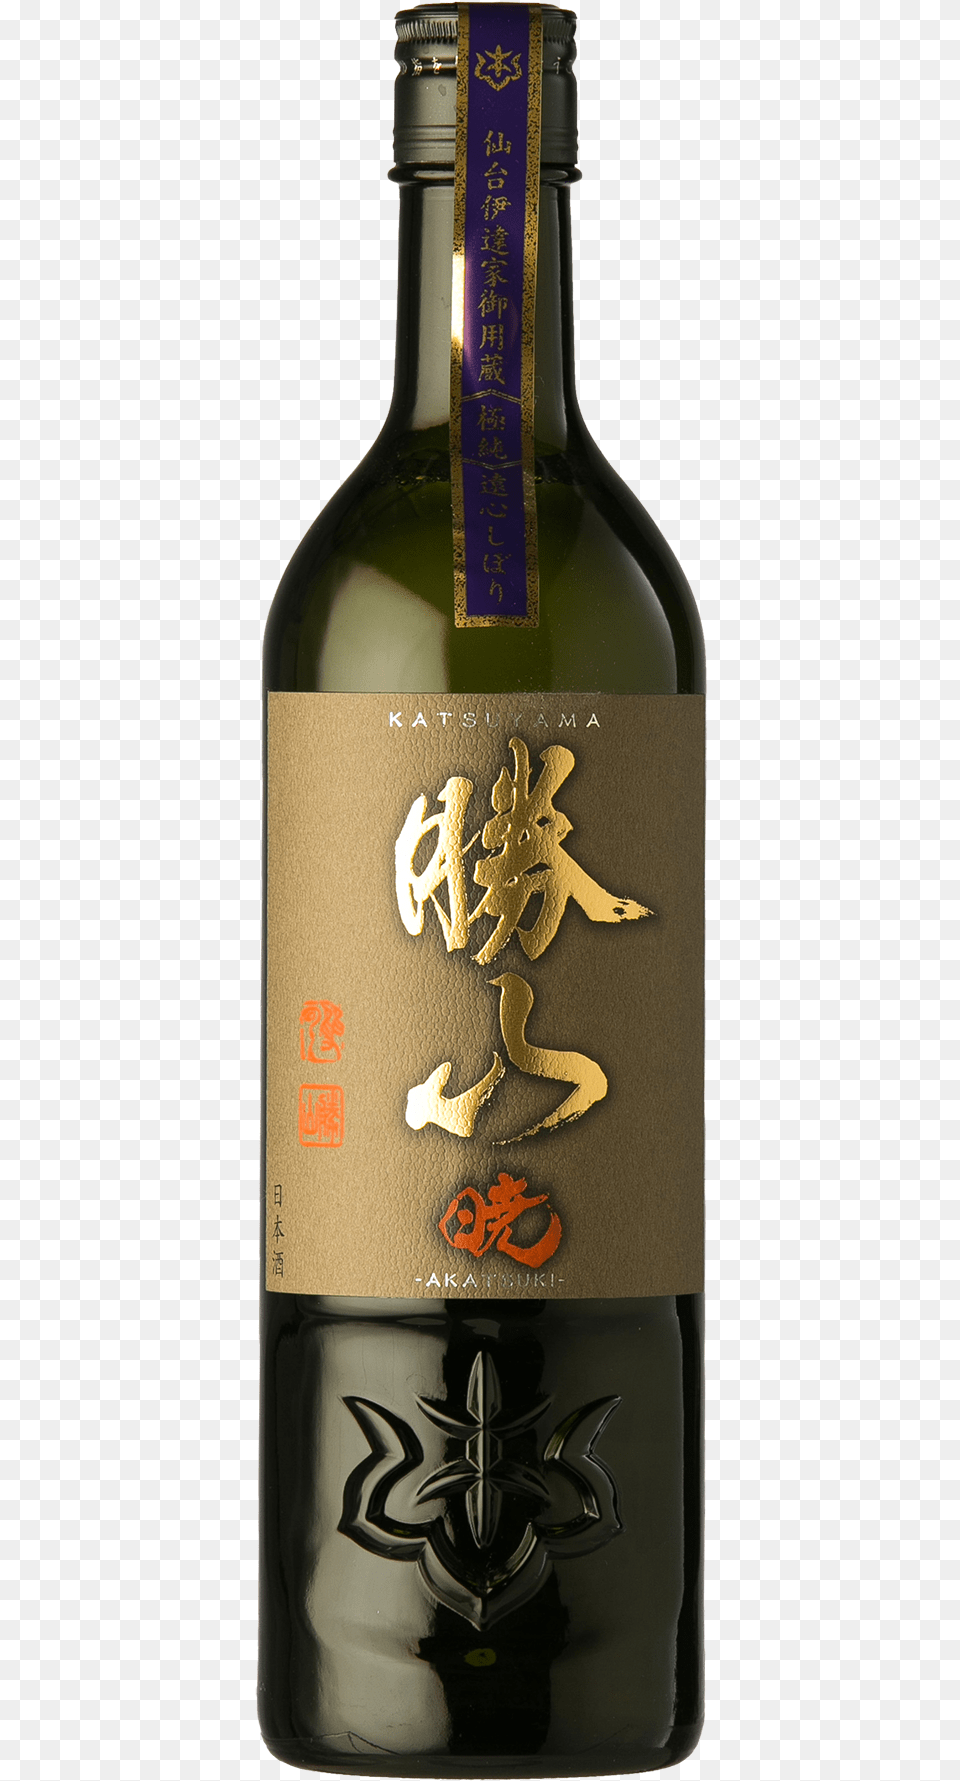 Ky 8 Katsuyama Akatsuki Junmai Daiginjo Wine Bottle, Alcohol, Beverage, Beer, Sake Free Transparent Png